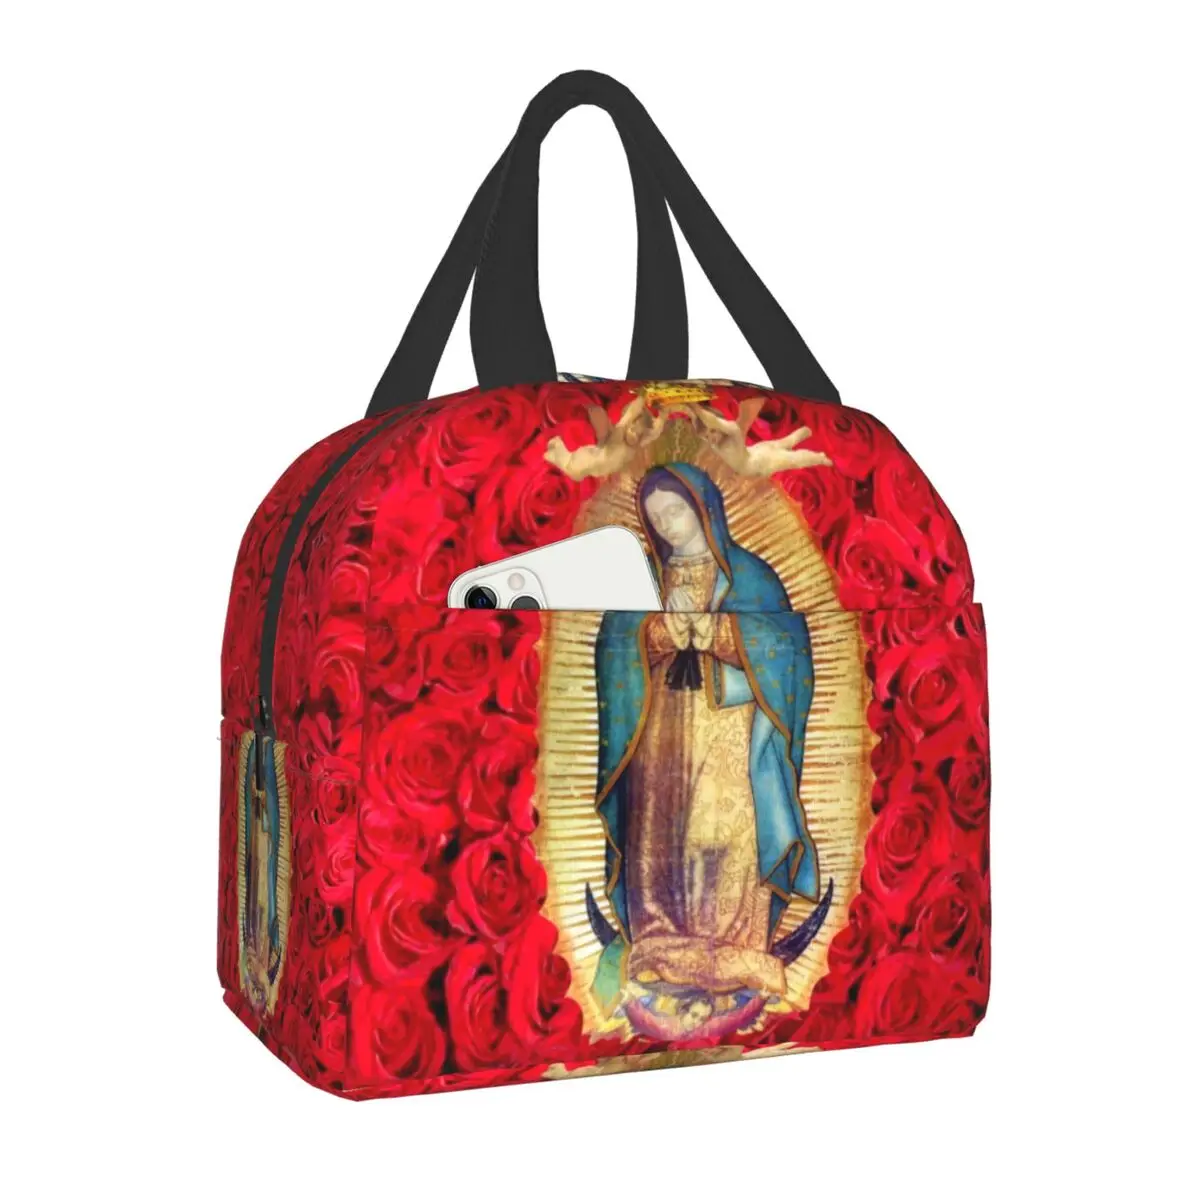 

Теплоизолированная сумка для ланча Дева Мария Гуадалупе, католическая многоразовая сумка-тоут для детей, школьный многофункциональный контейнер для еды